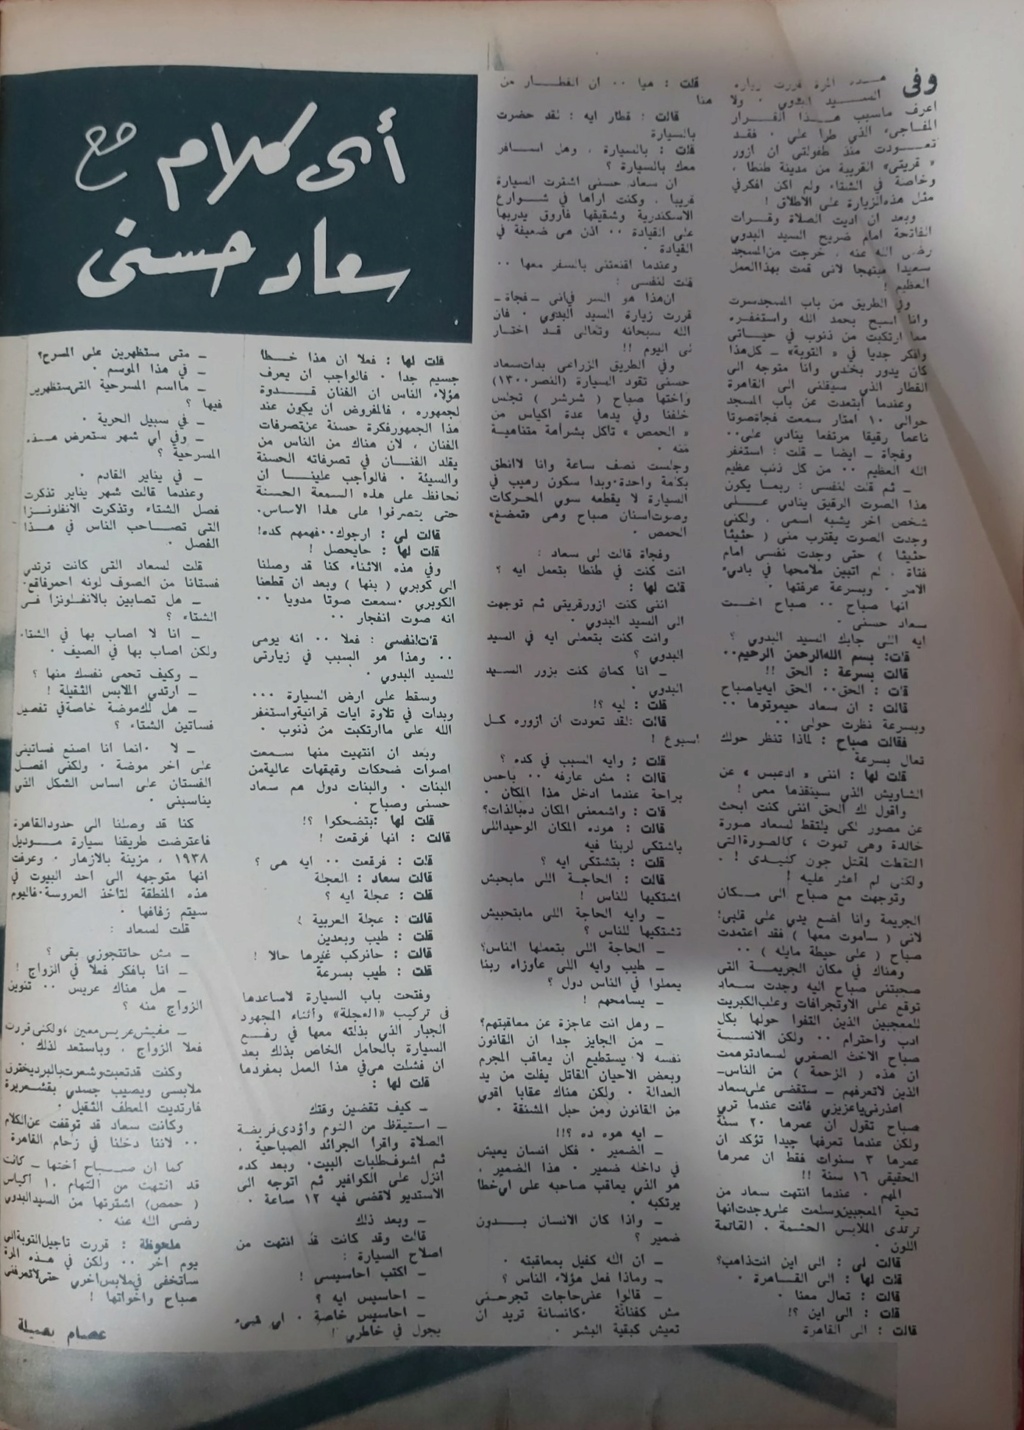 صحفي - حوار صحفي : أي كلام مع .. سعاد حسني 1963 م 171